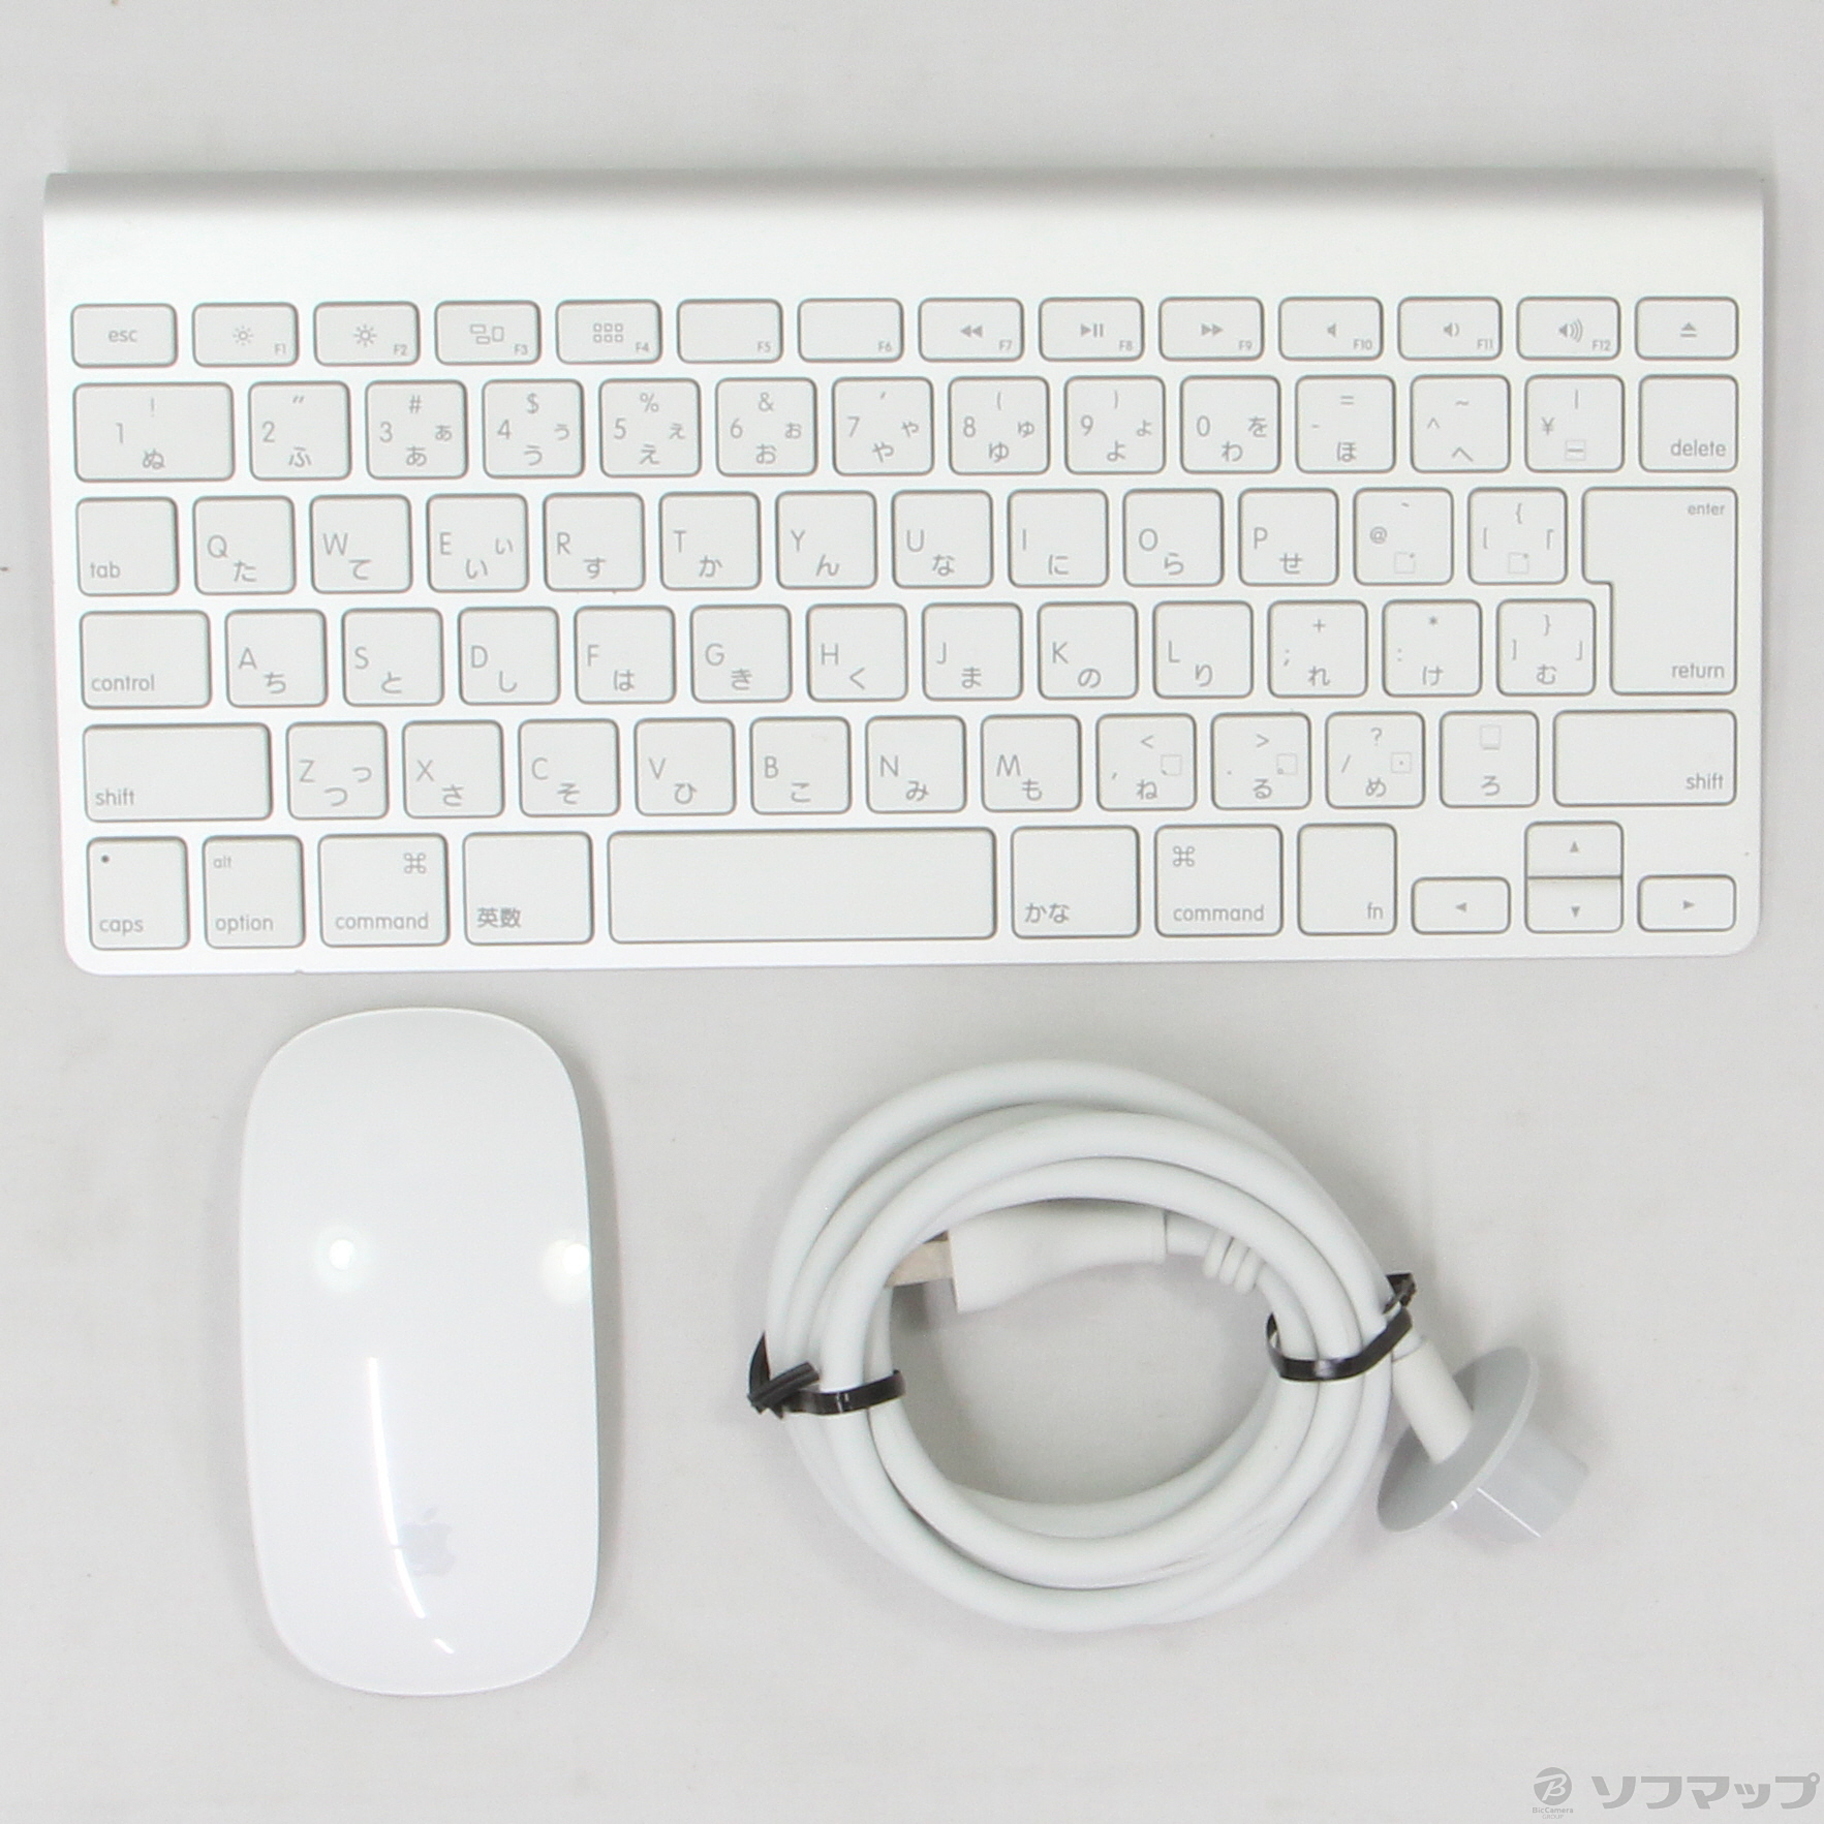 ビジネス iMac (21.5-inch,late 2013) 純正キーボード,マウス付属